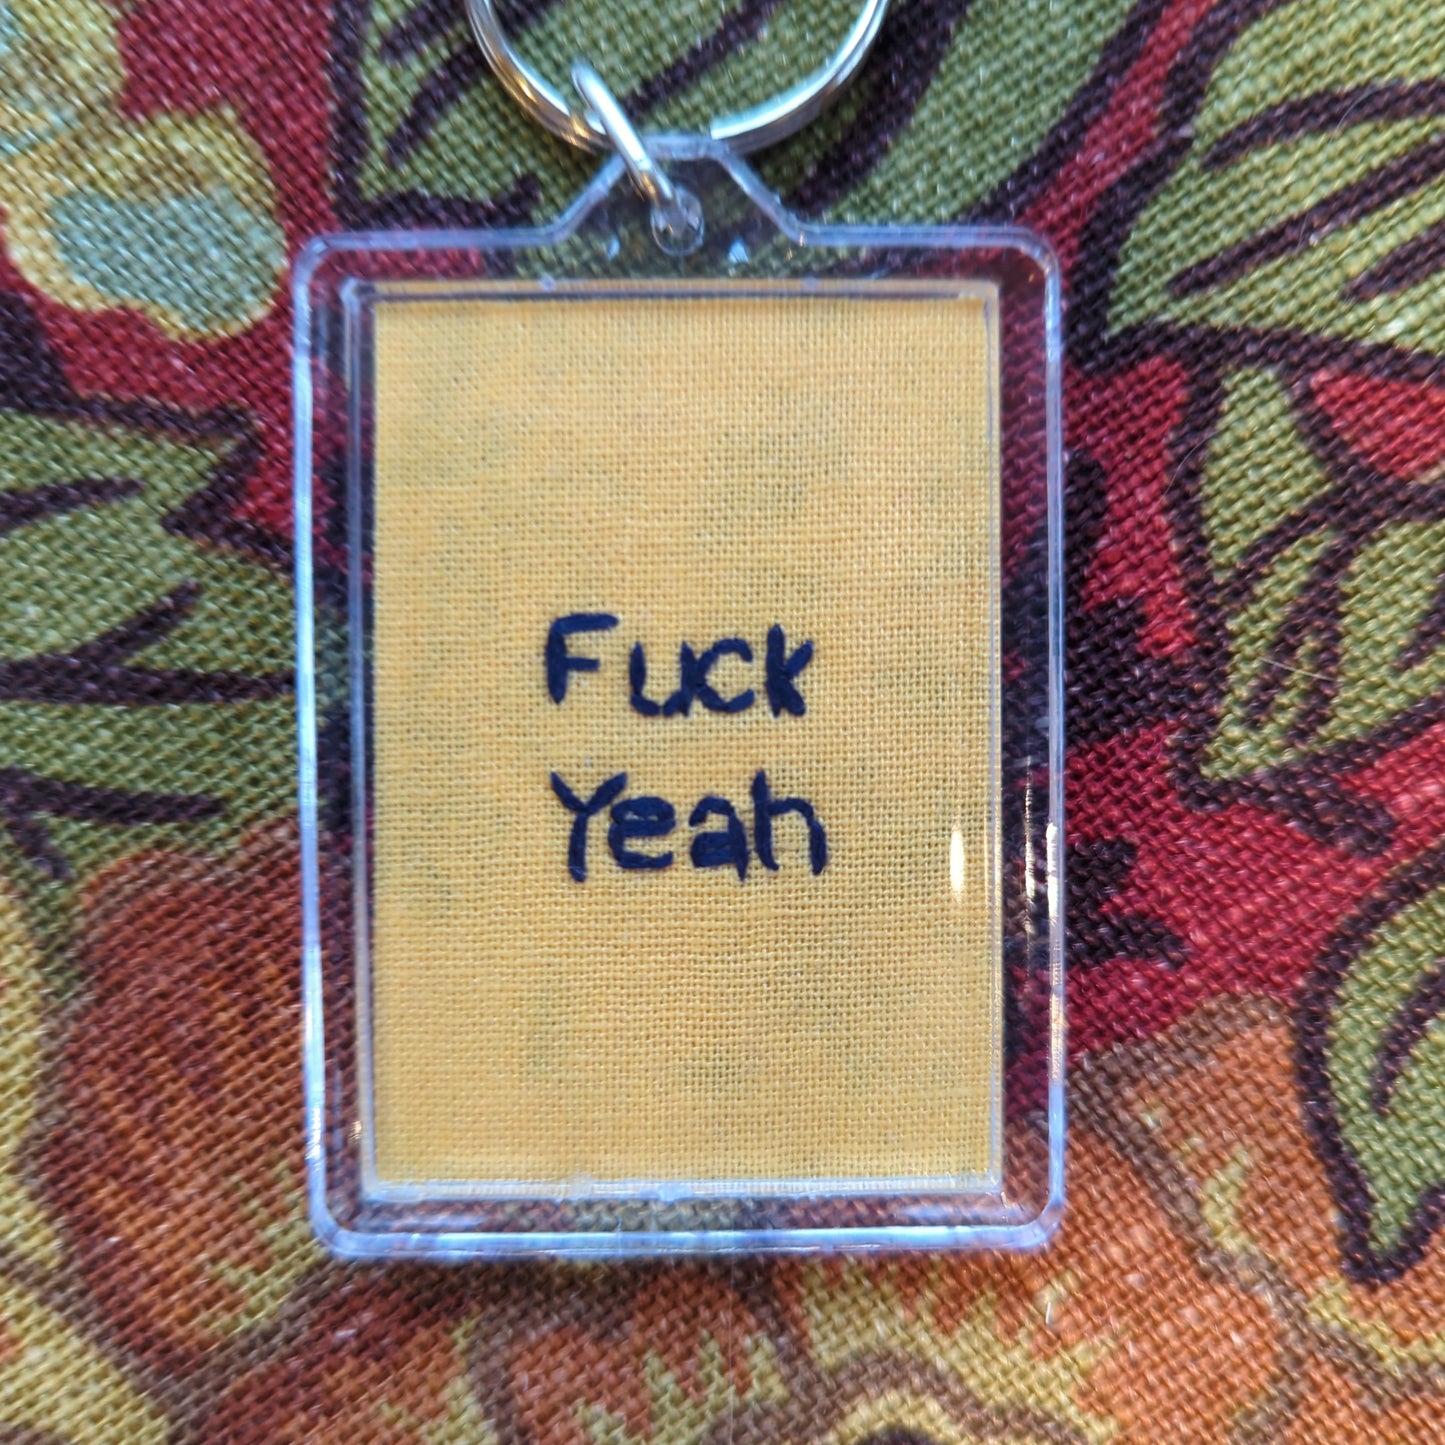 Salty wisdom stitched keychains